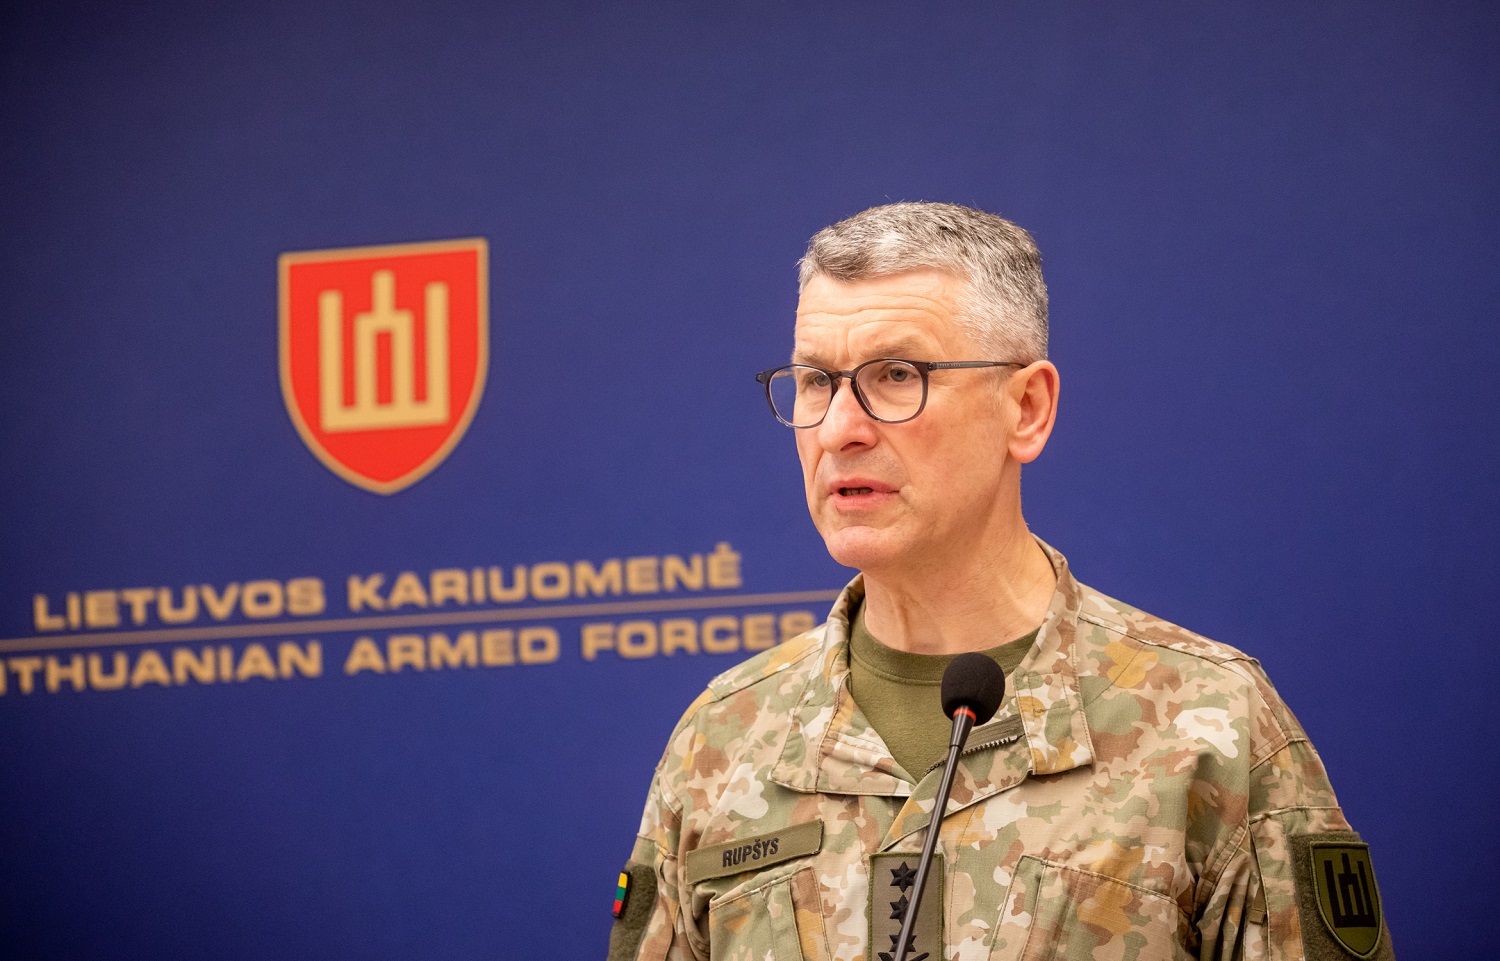 Kariuomenės vadas nemato pagrindo visoje Lietuvoje skelbti nepaprastąją padėtį: Rusijos kariuomenė turi didelių problemų